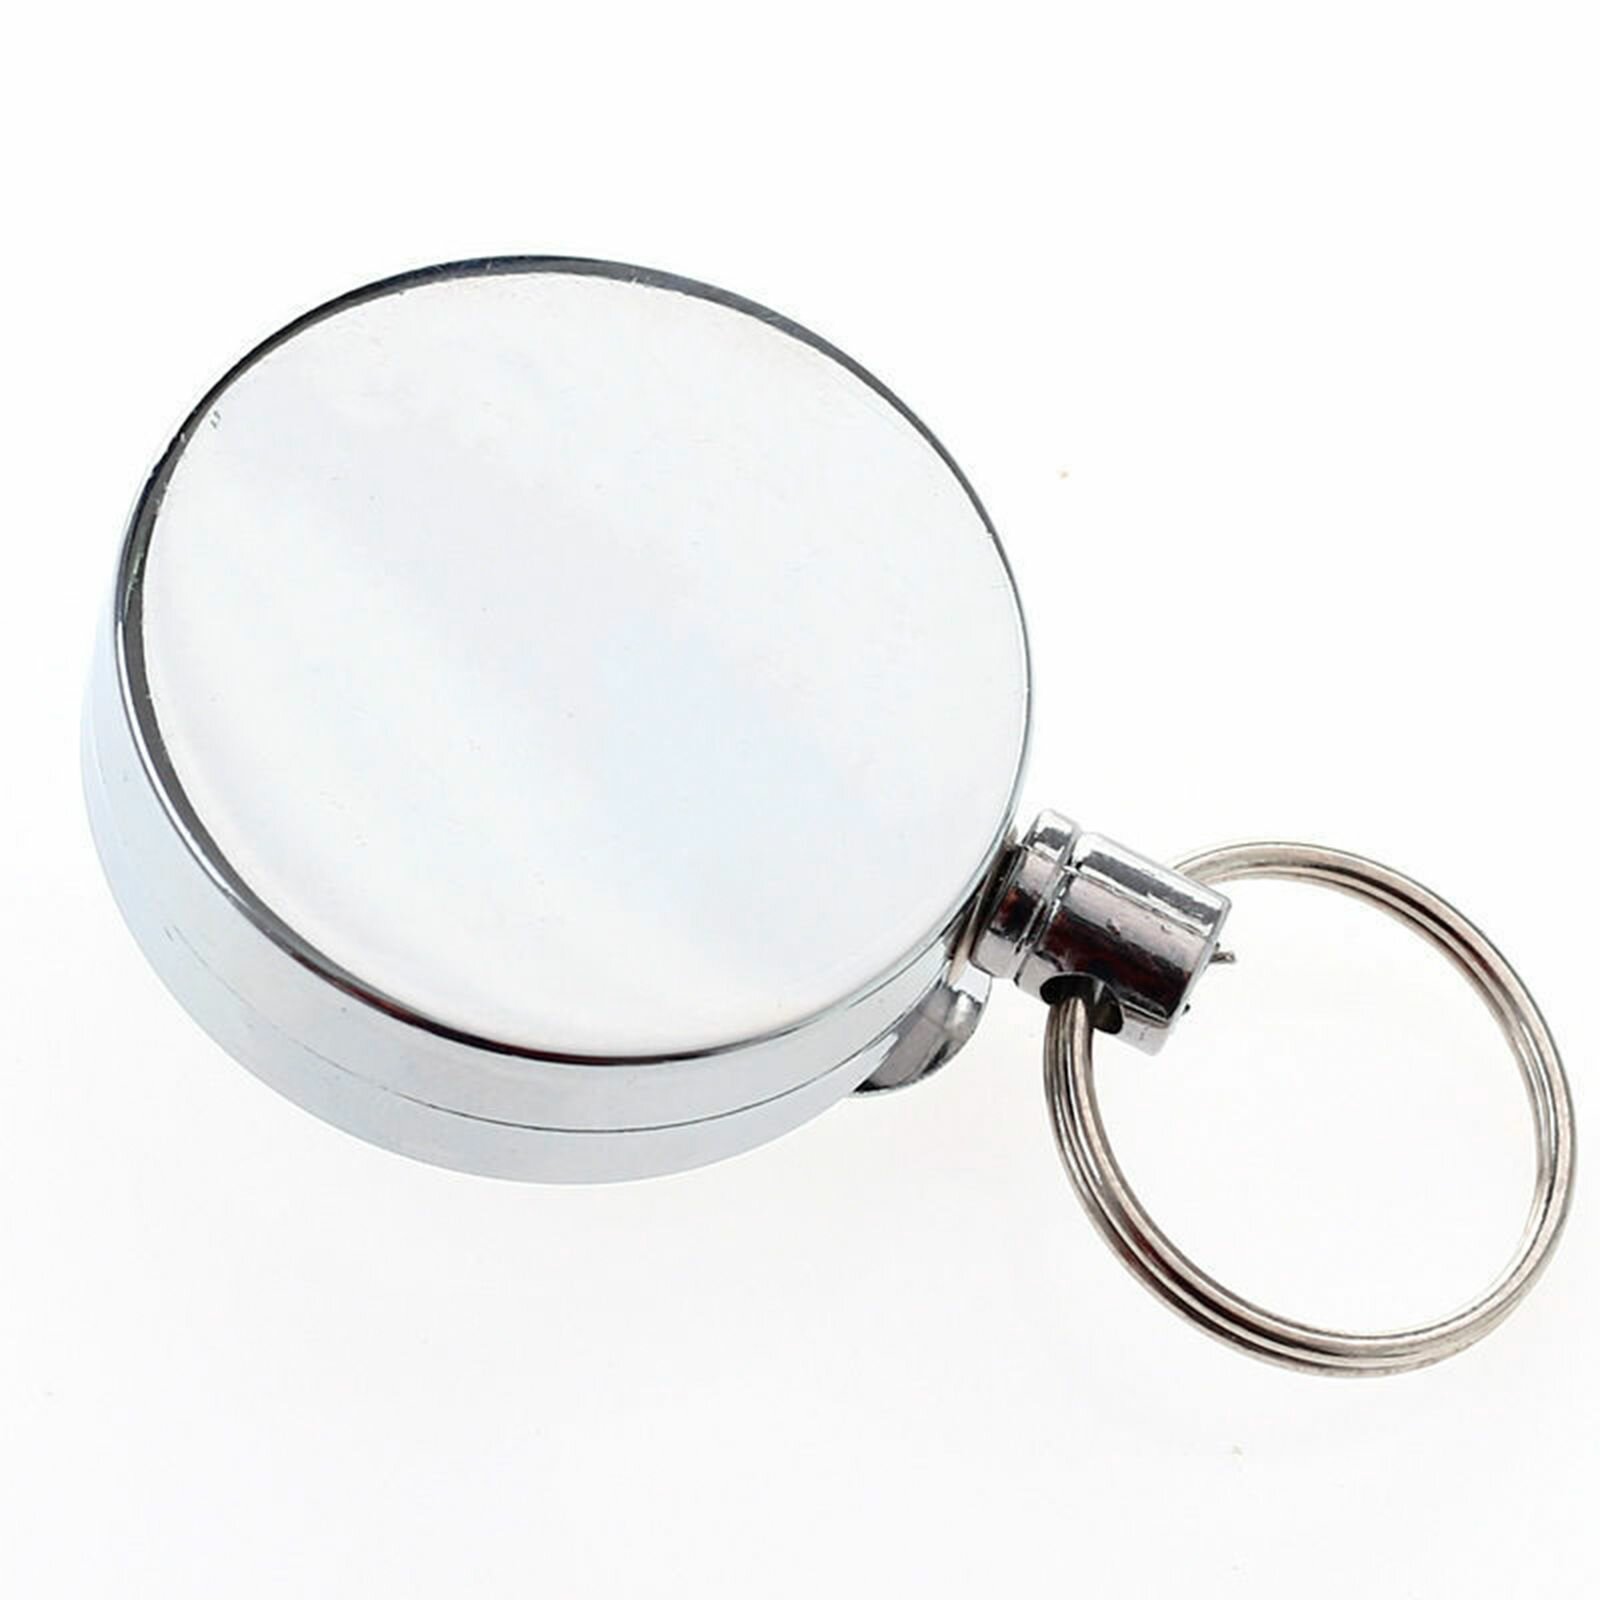 Брелок металлический с кольцом / Брелок для ключей с выдвижным тросиком